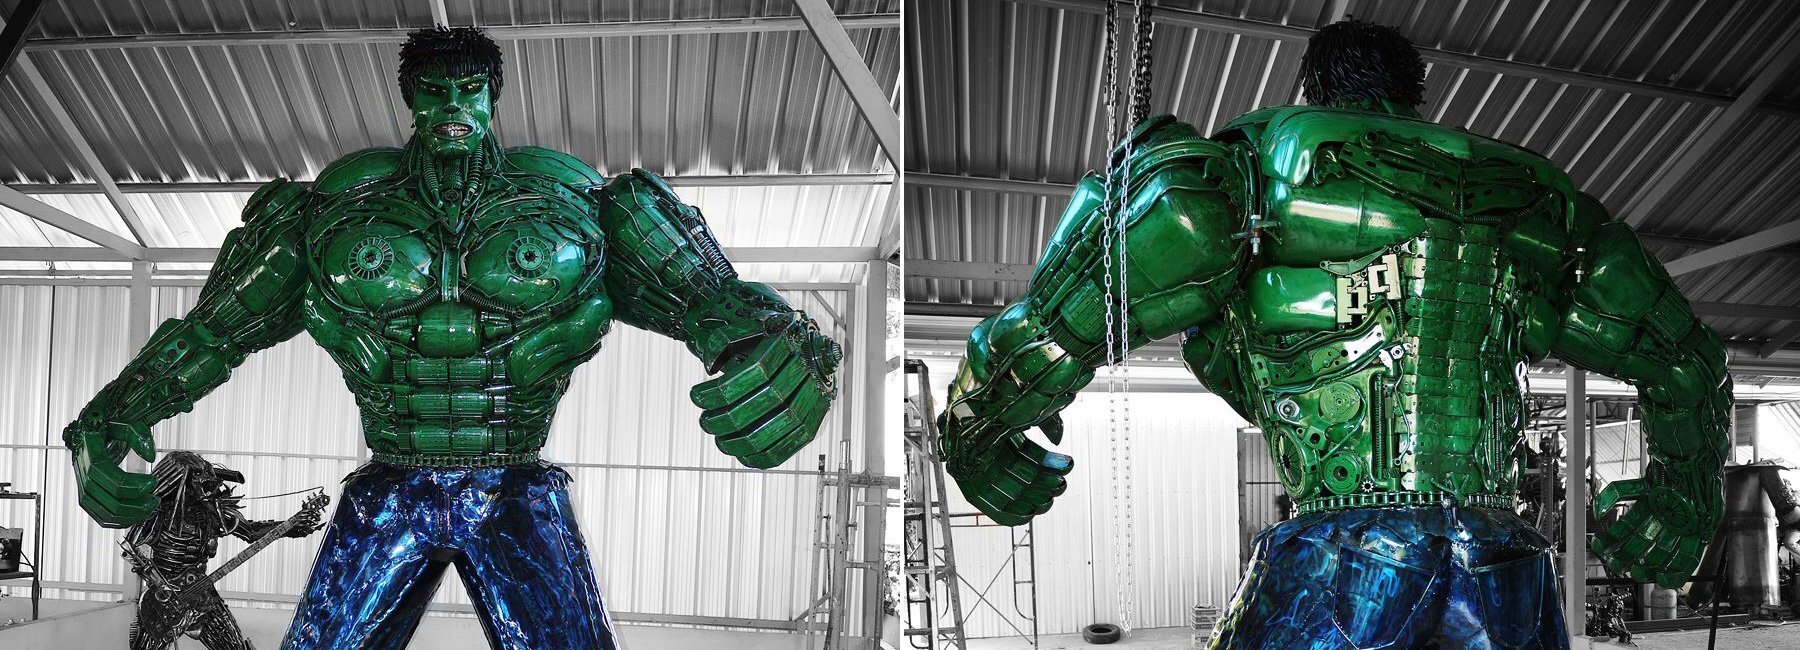 Lebih Dari 3 Meter!  Hulk Ini Berasal Dari Thailand